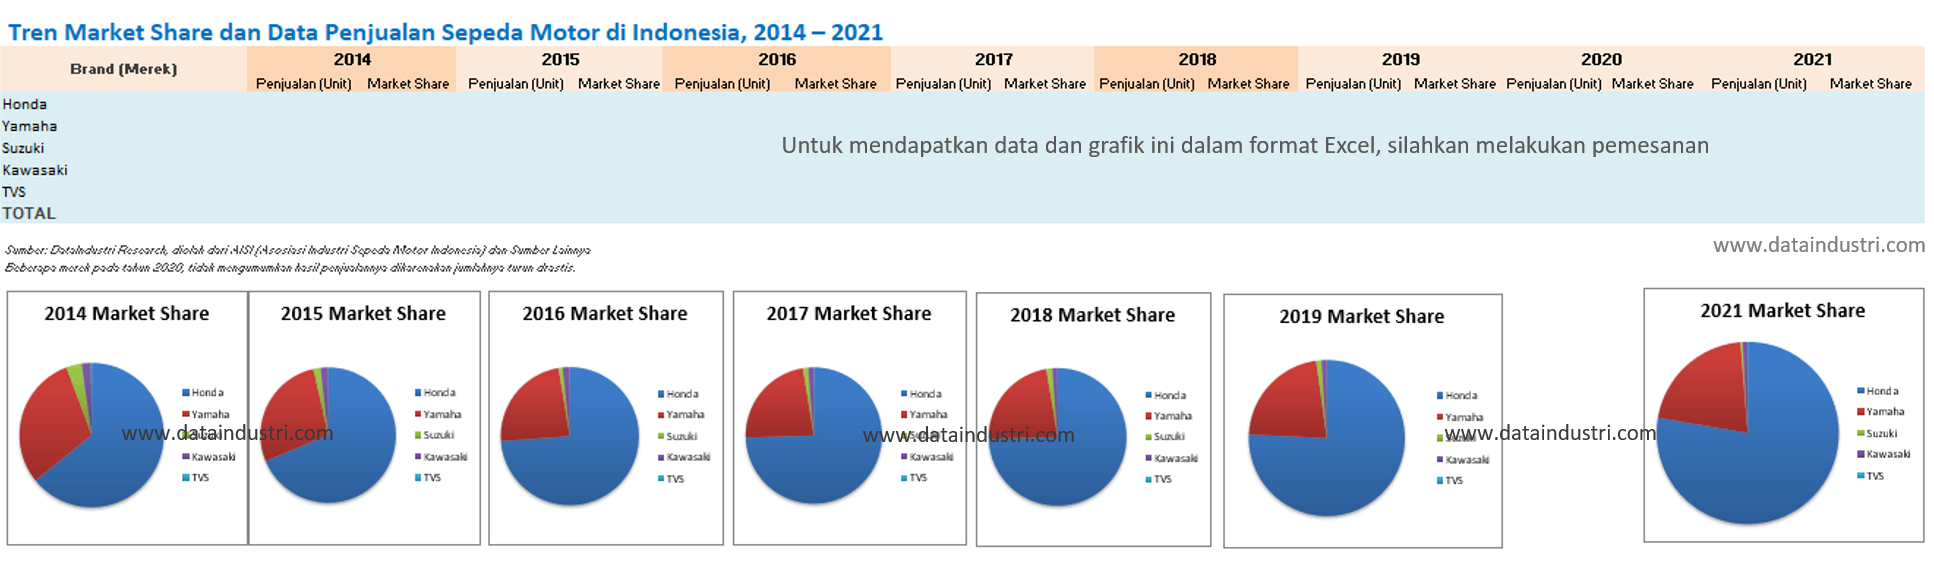 Tren Market Share dan Data Penjualan Sepeda Motor di Indonesia, 2014 – 2021